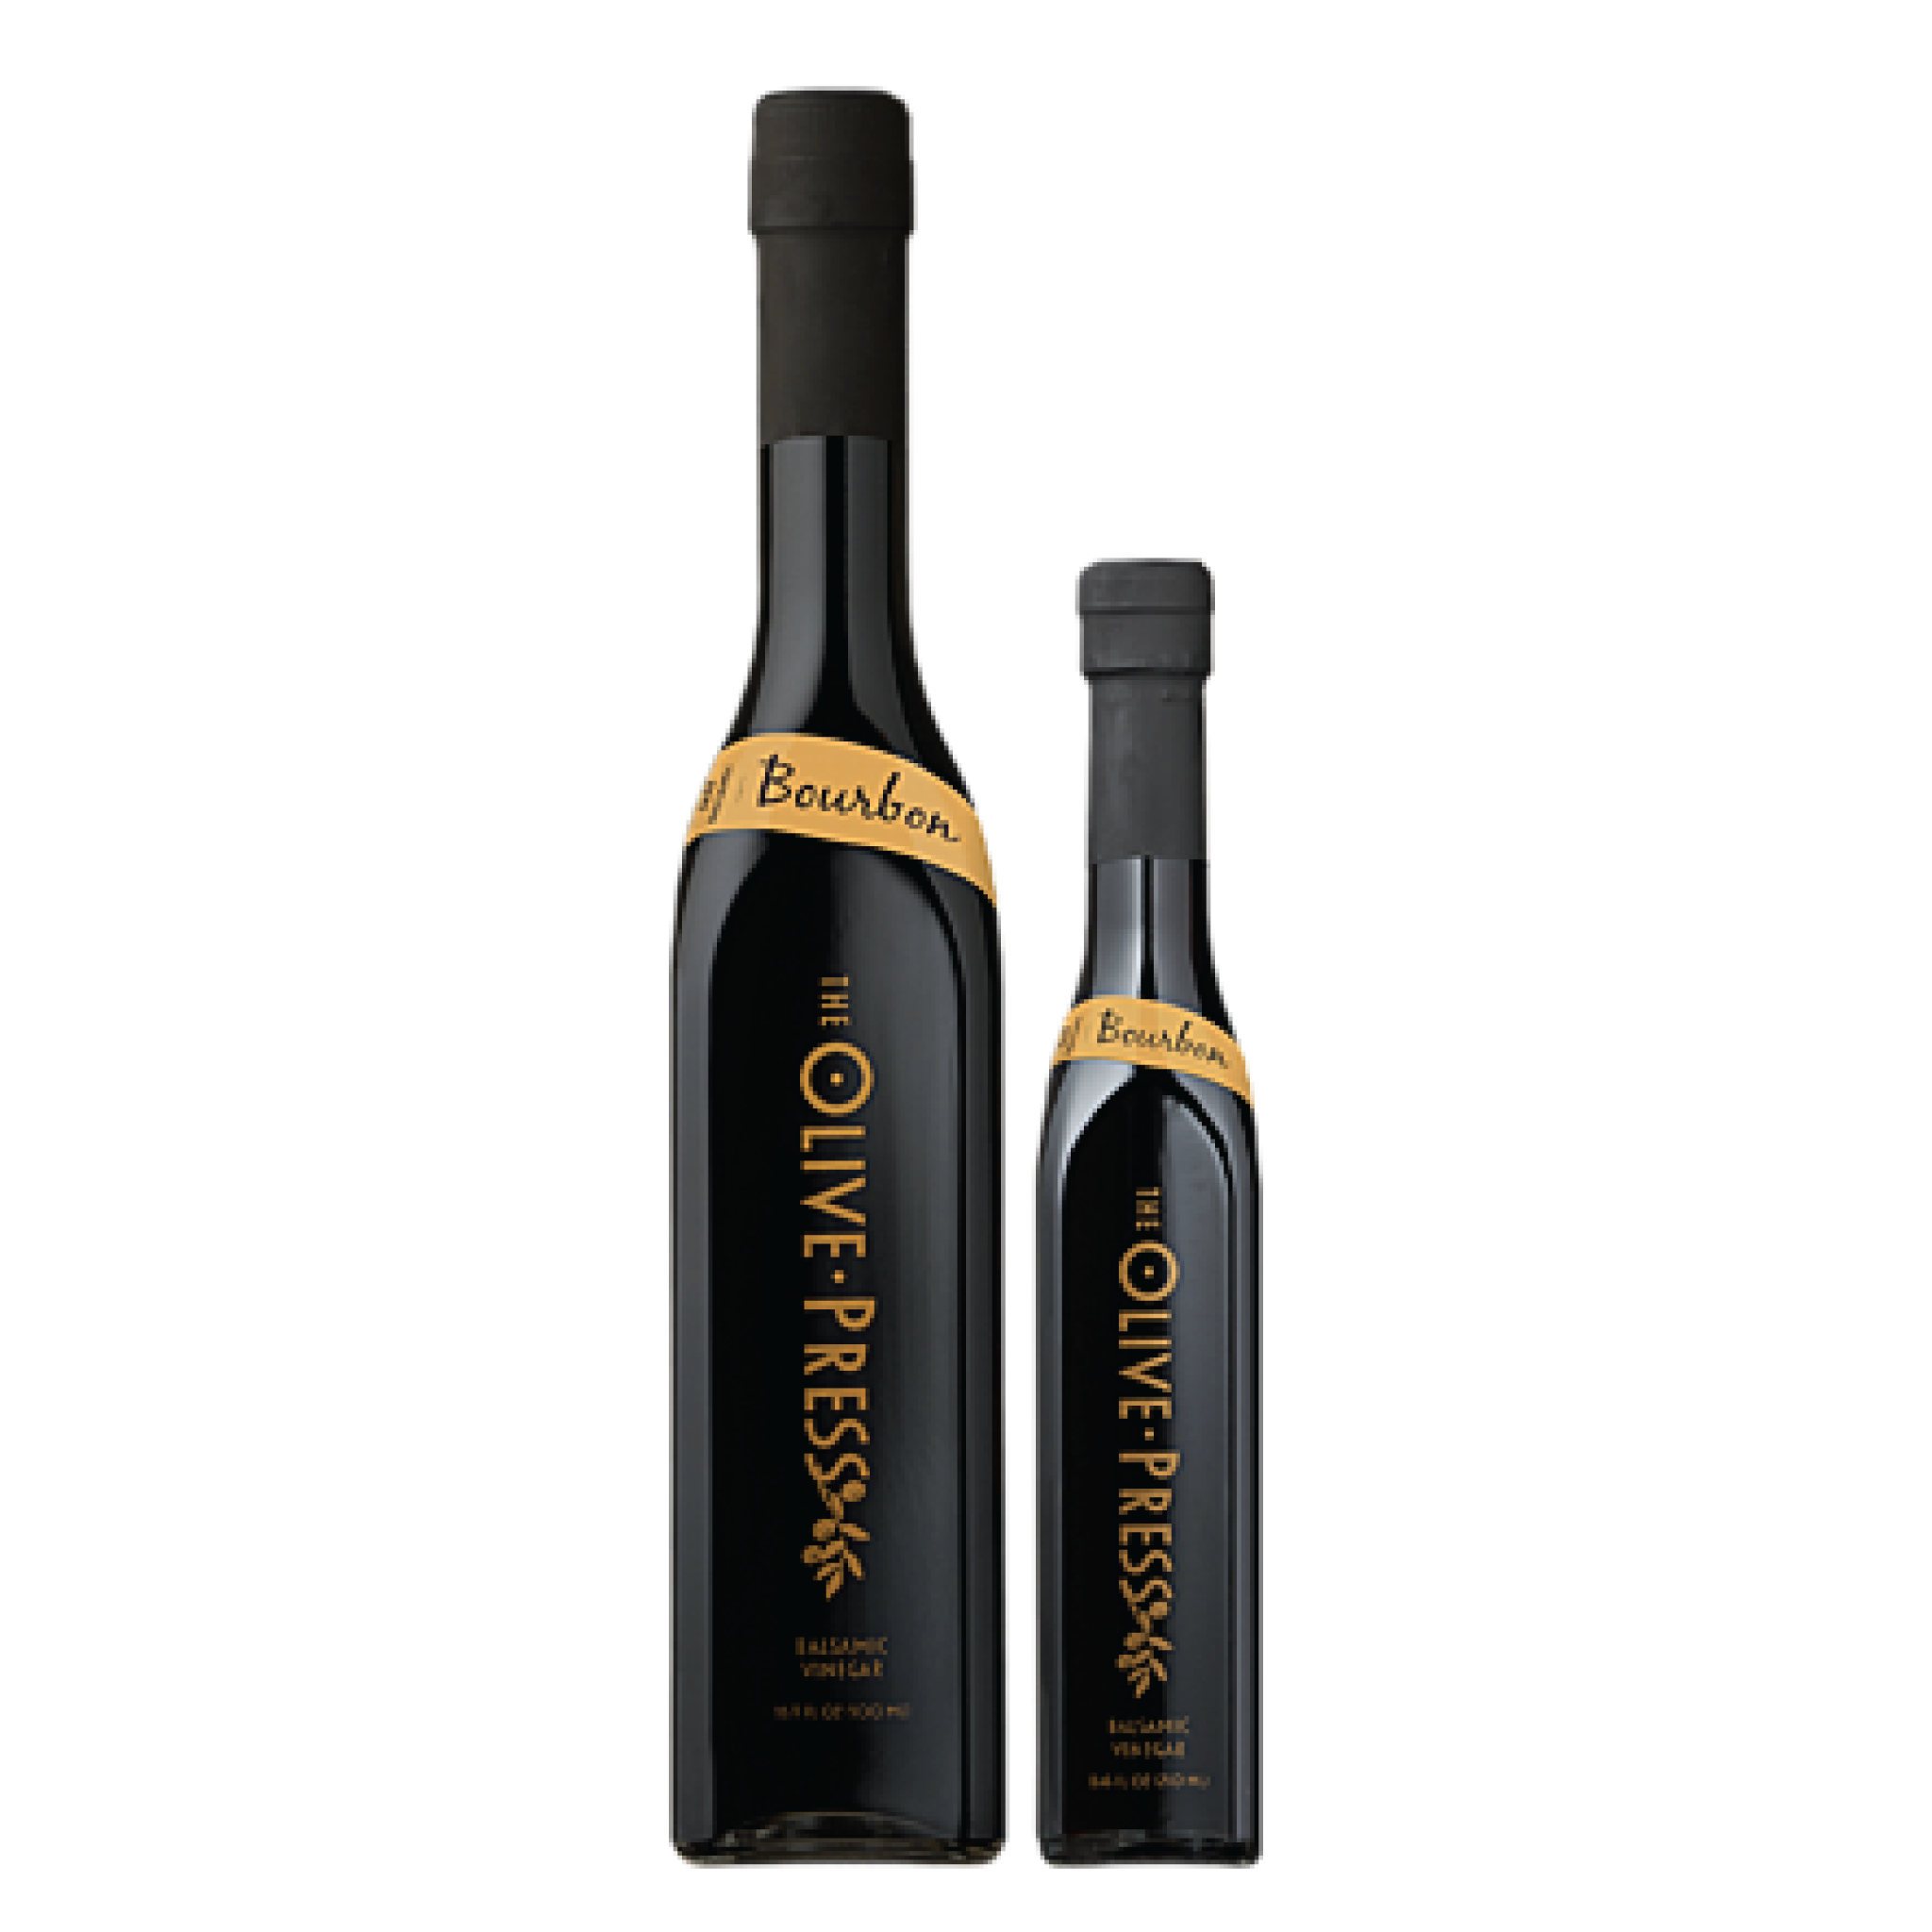 Bourbon-Balsamic-Vinegar-2048x2048